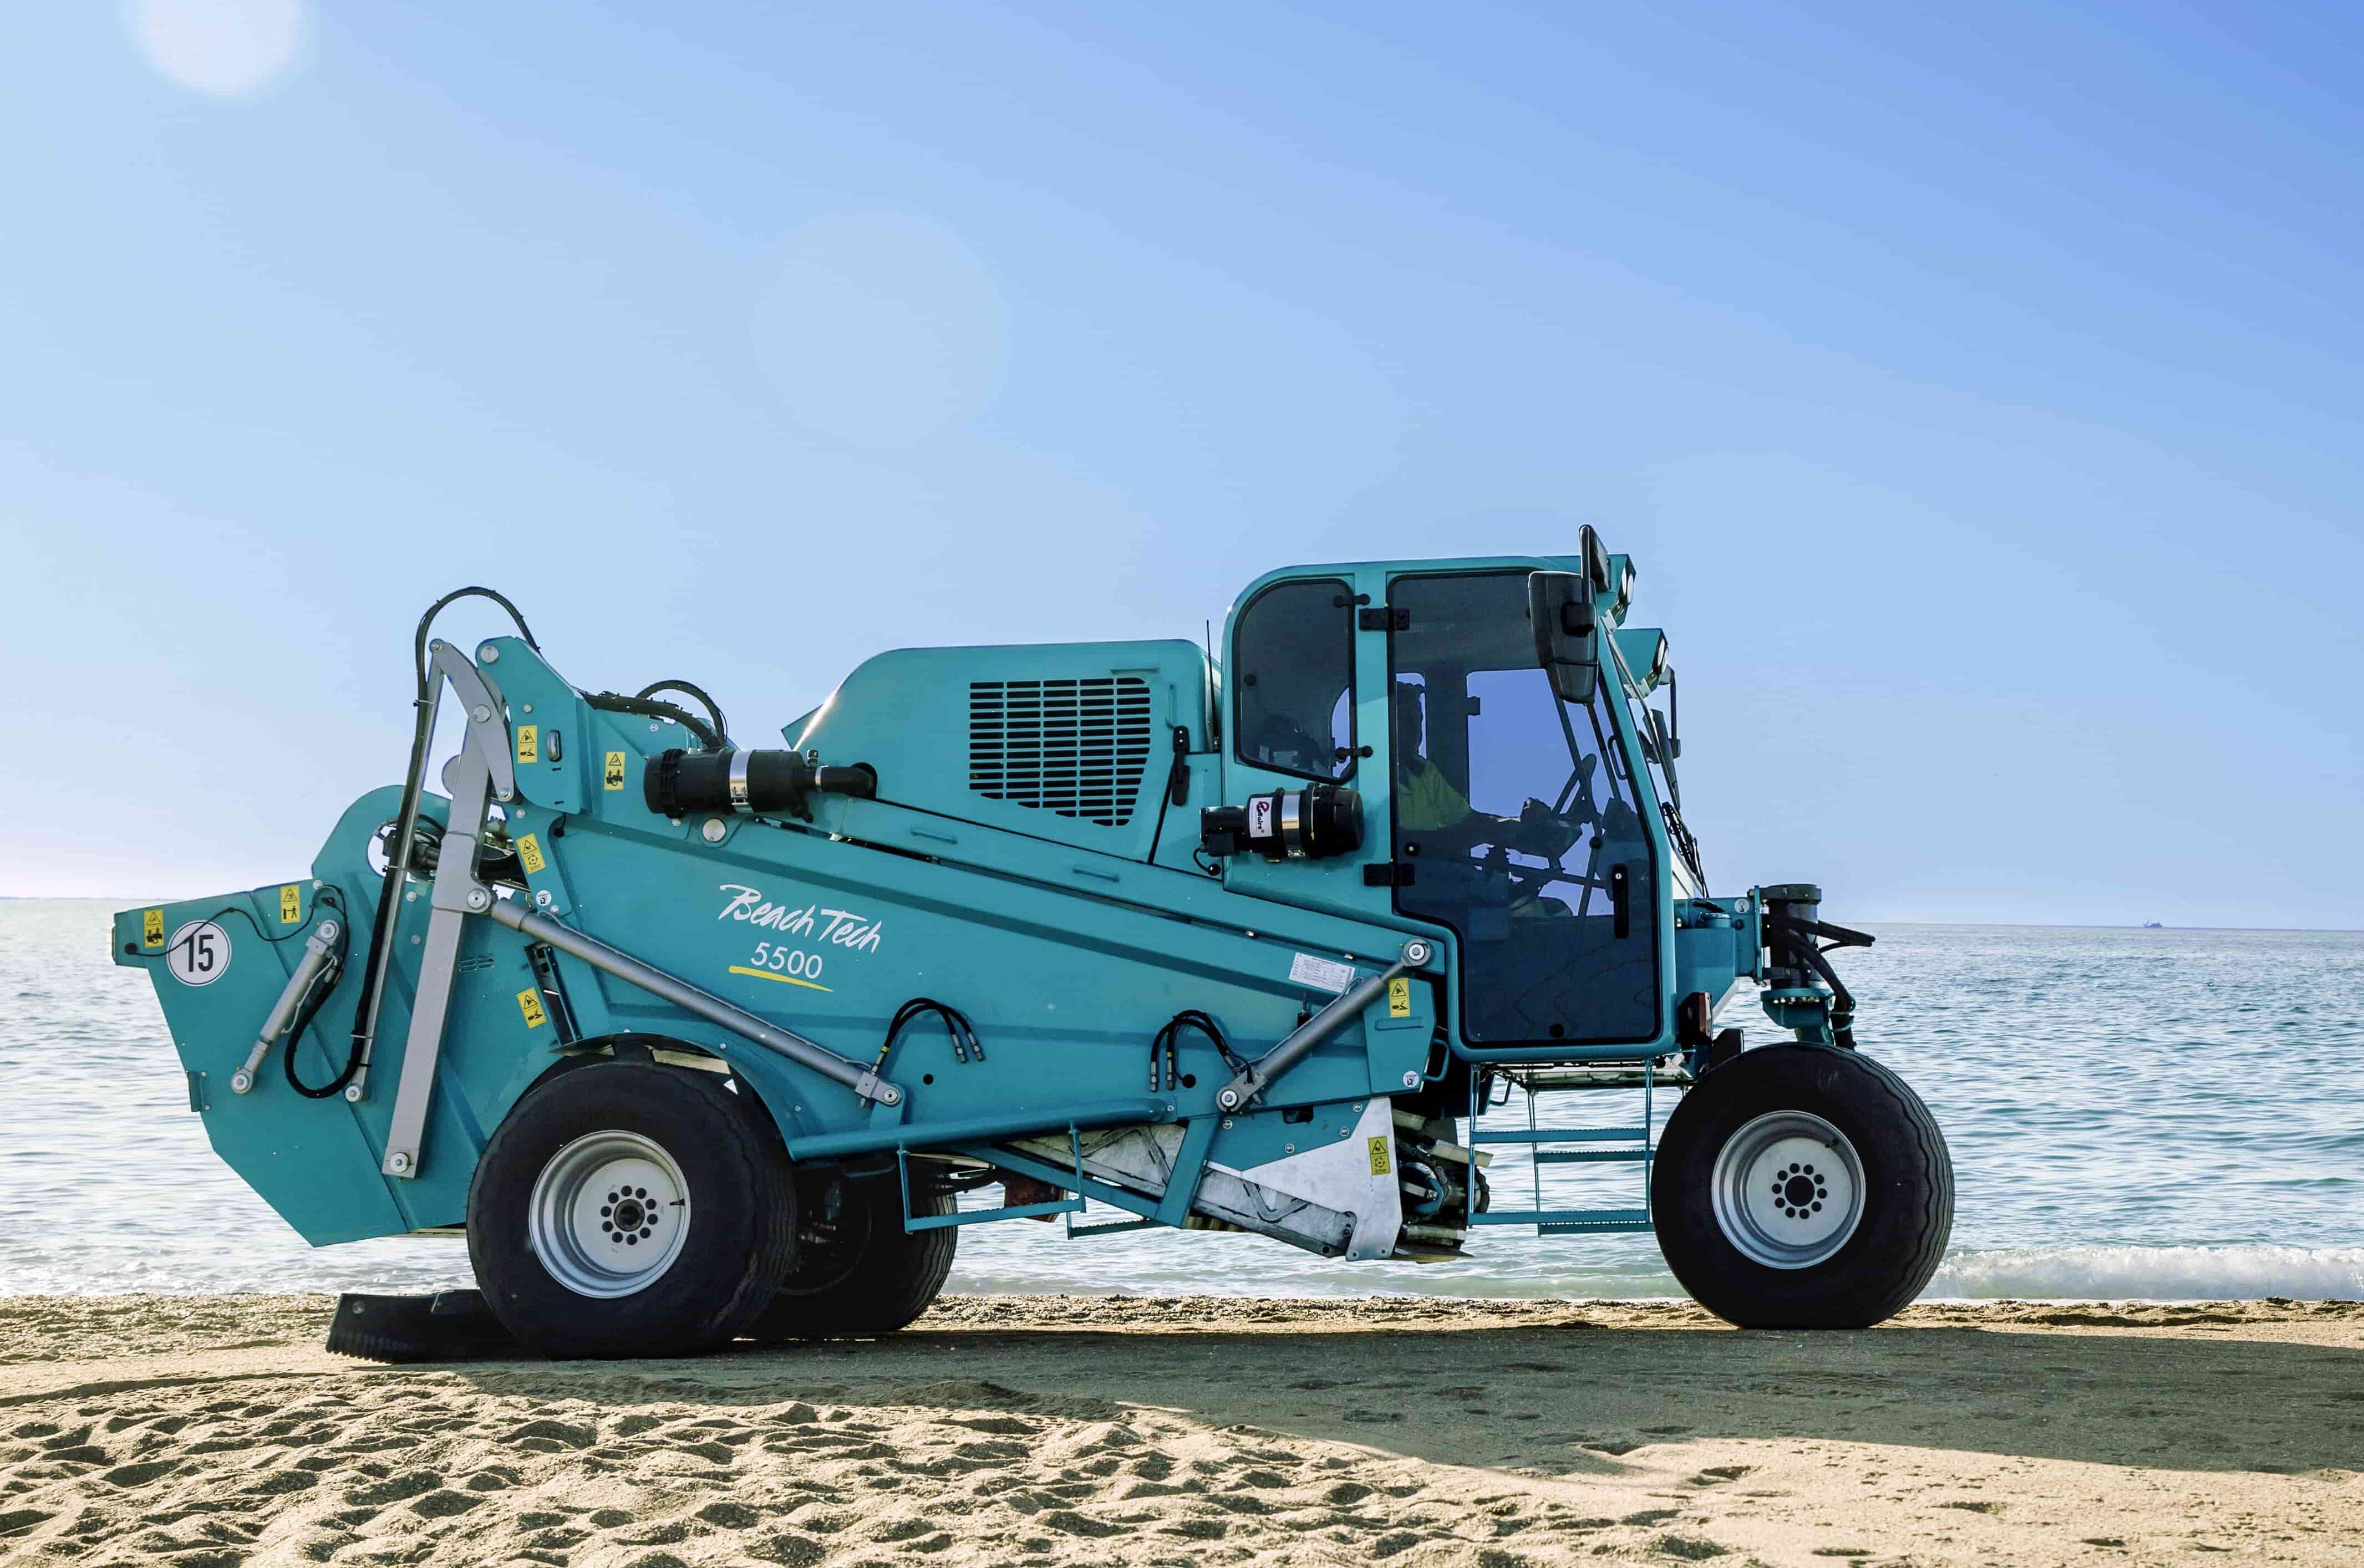 El nuevo limpiaplaya BeachTech 5500 en la playa